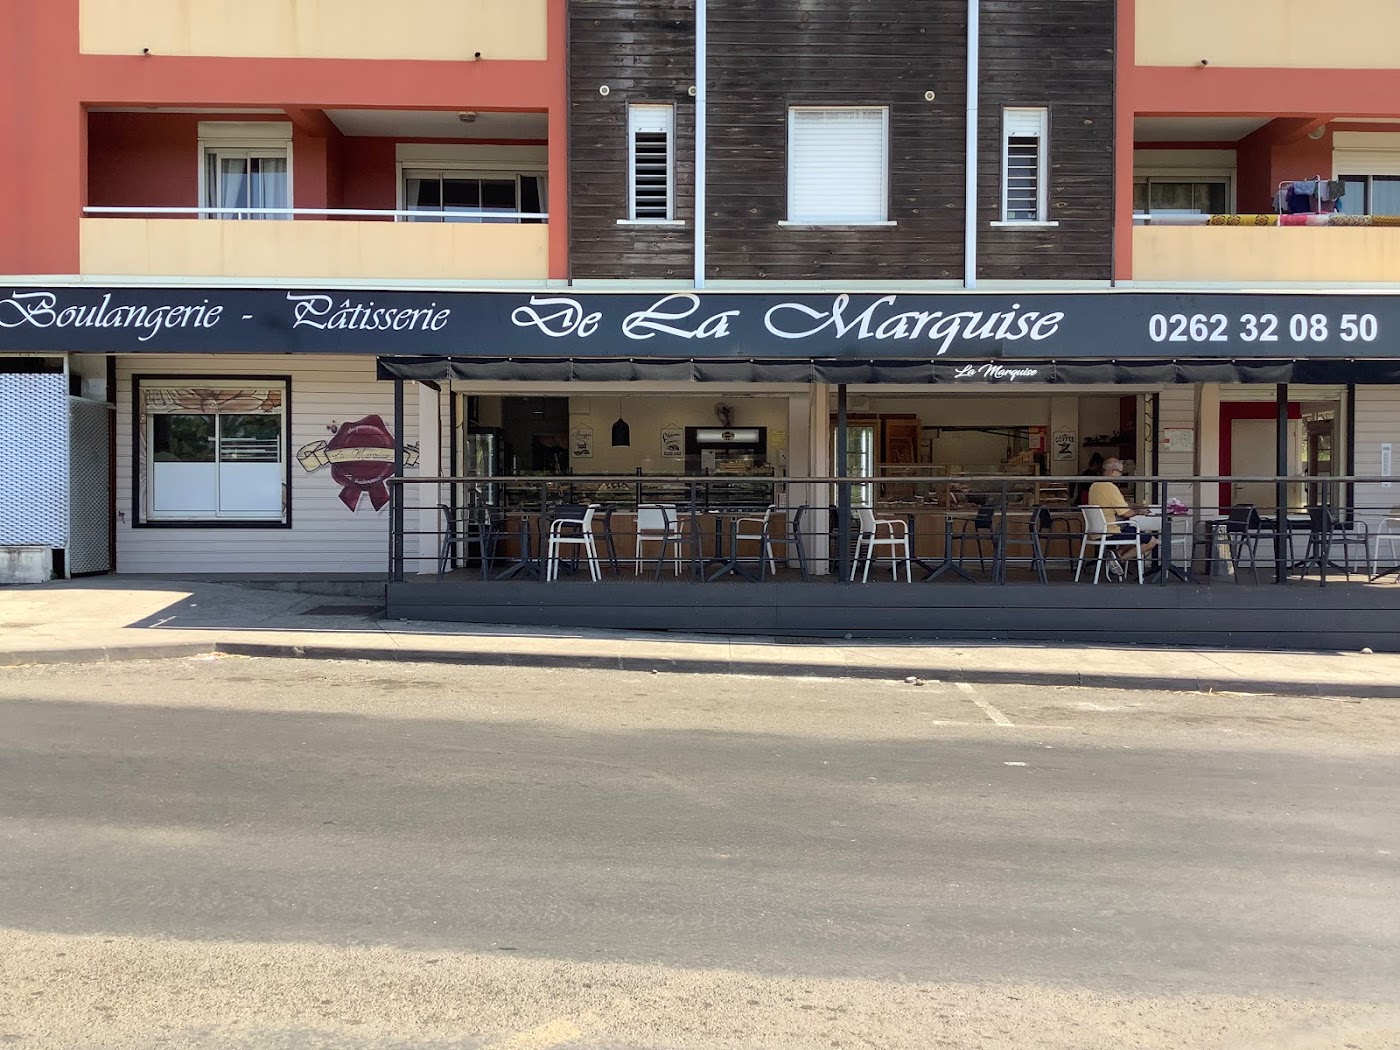 Boulangerie-Patisserie De La Marquise